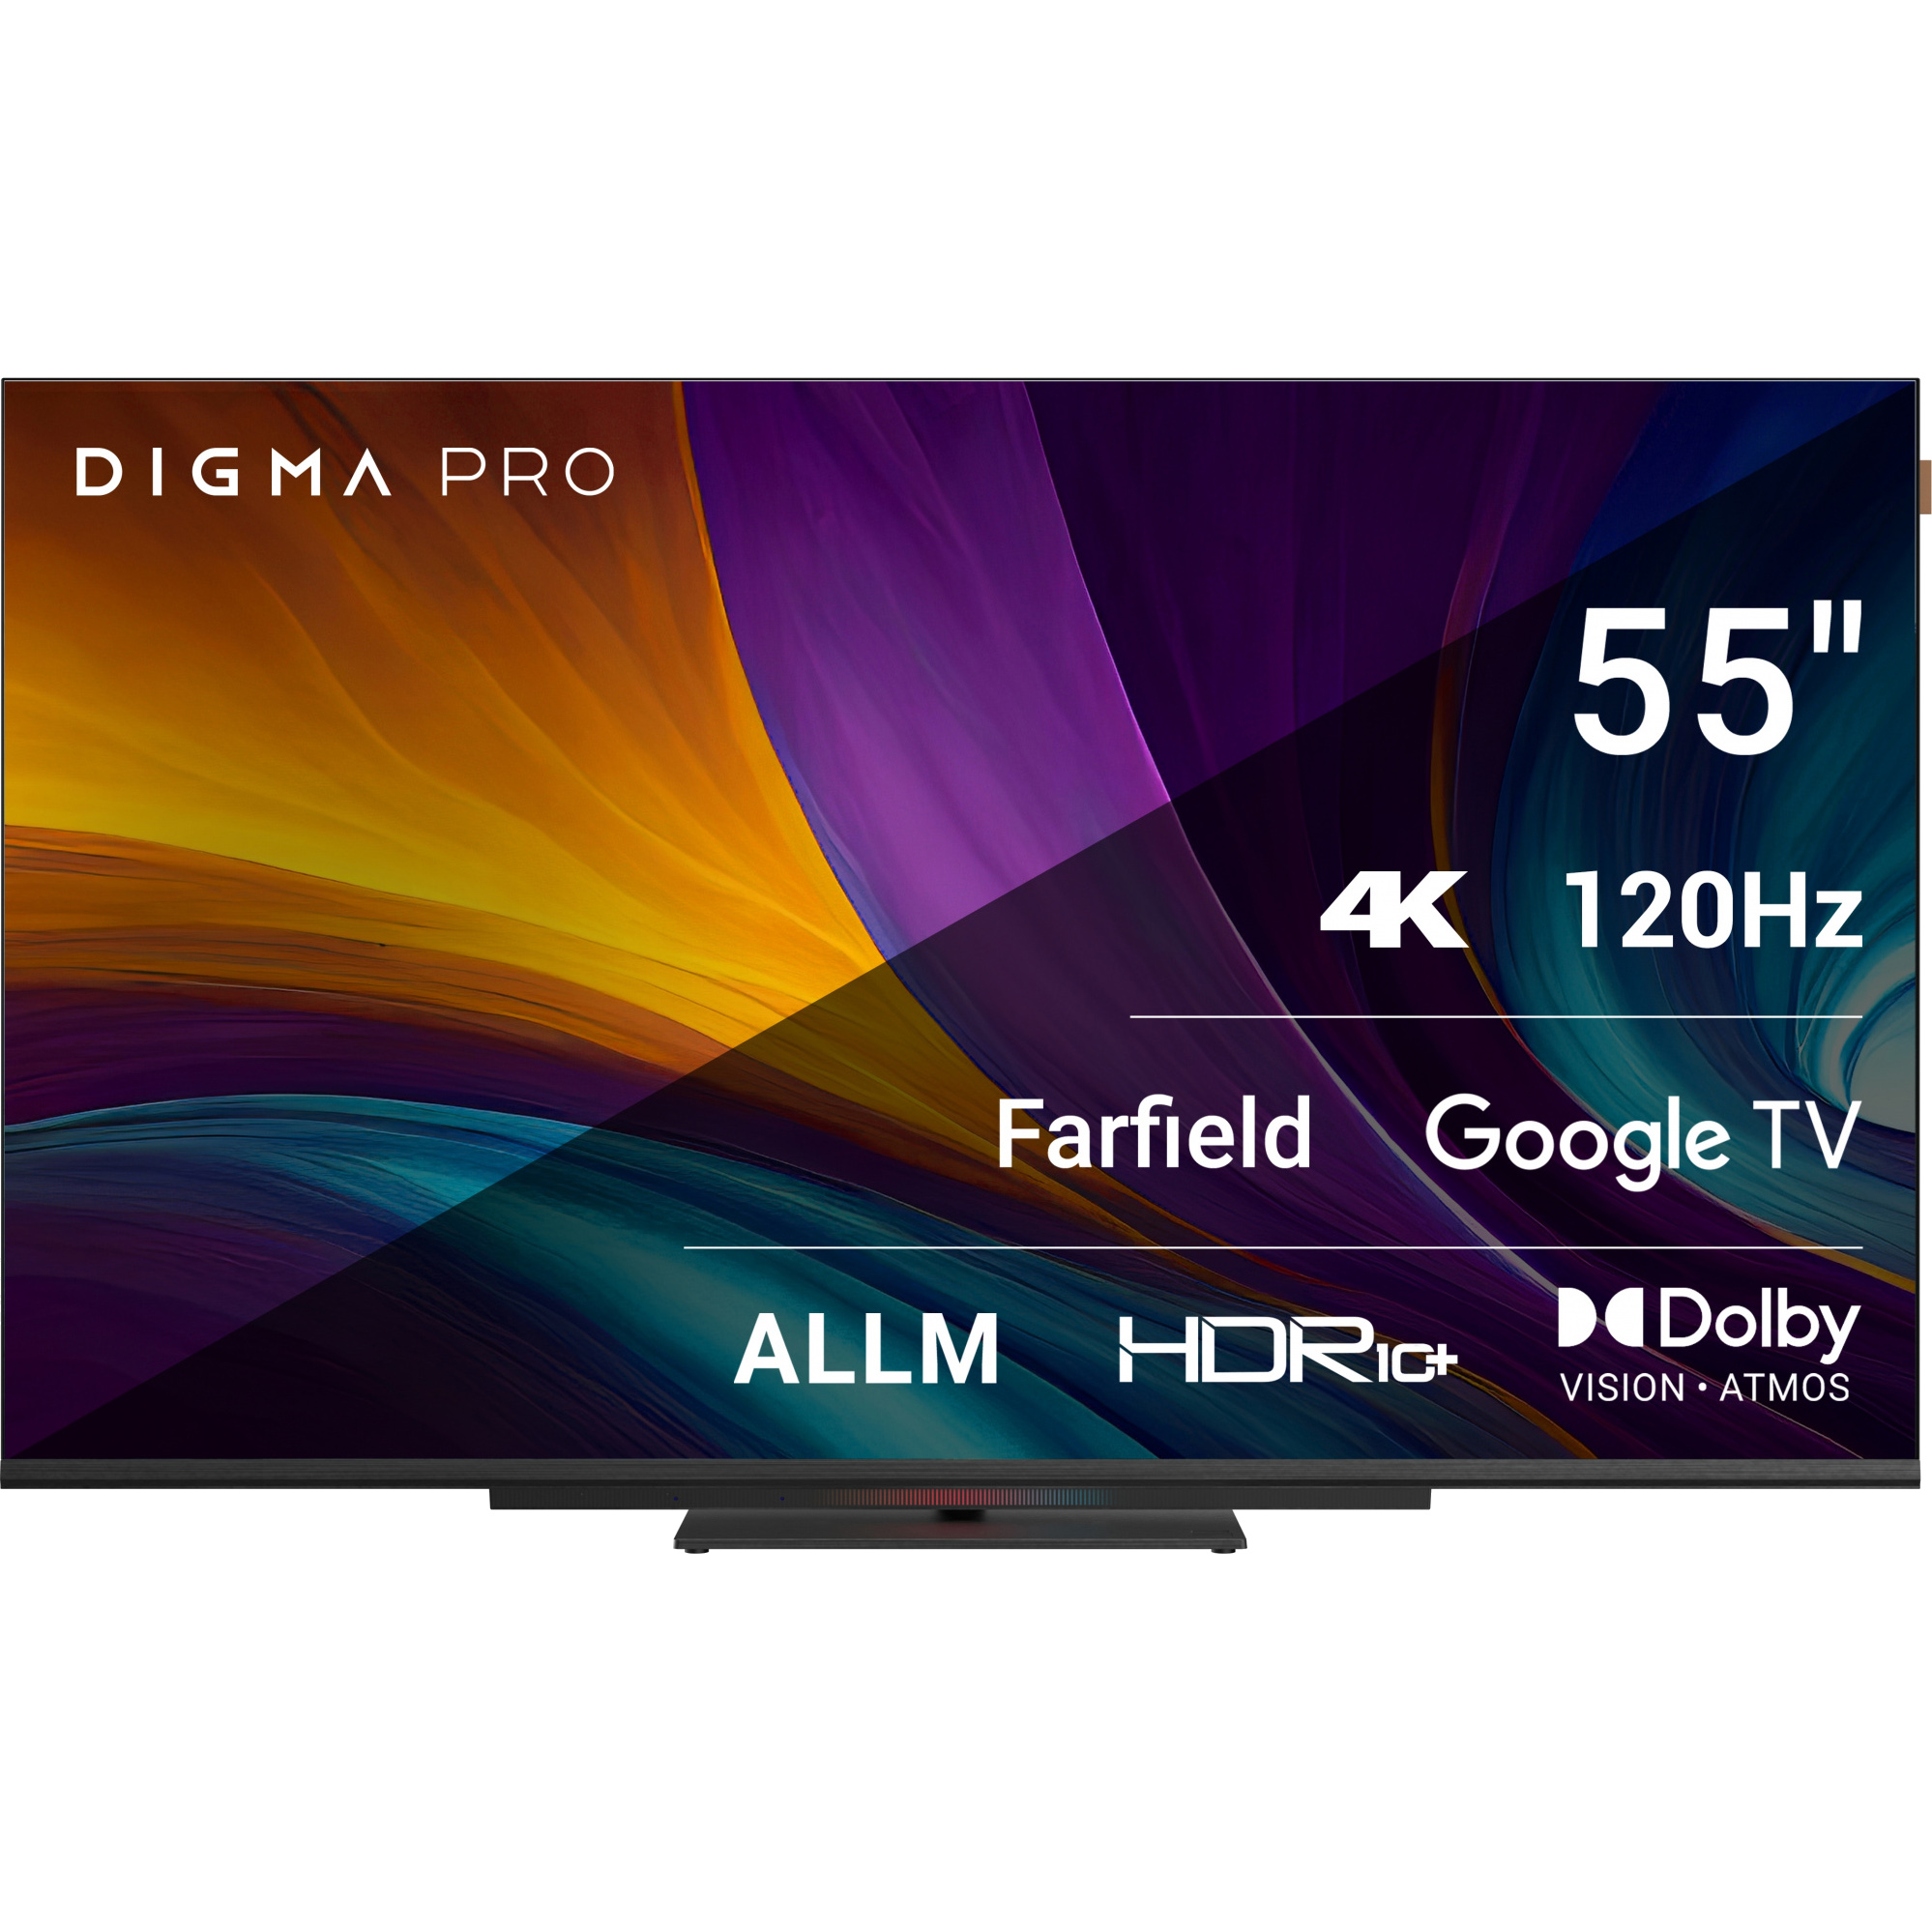 телевизор digma pro 55 55с Телевизор Digma Pro 55 55С